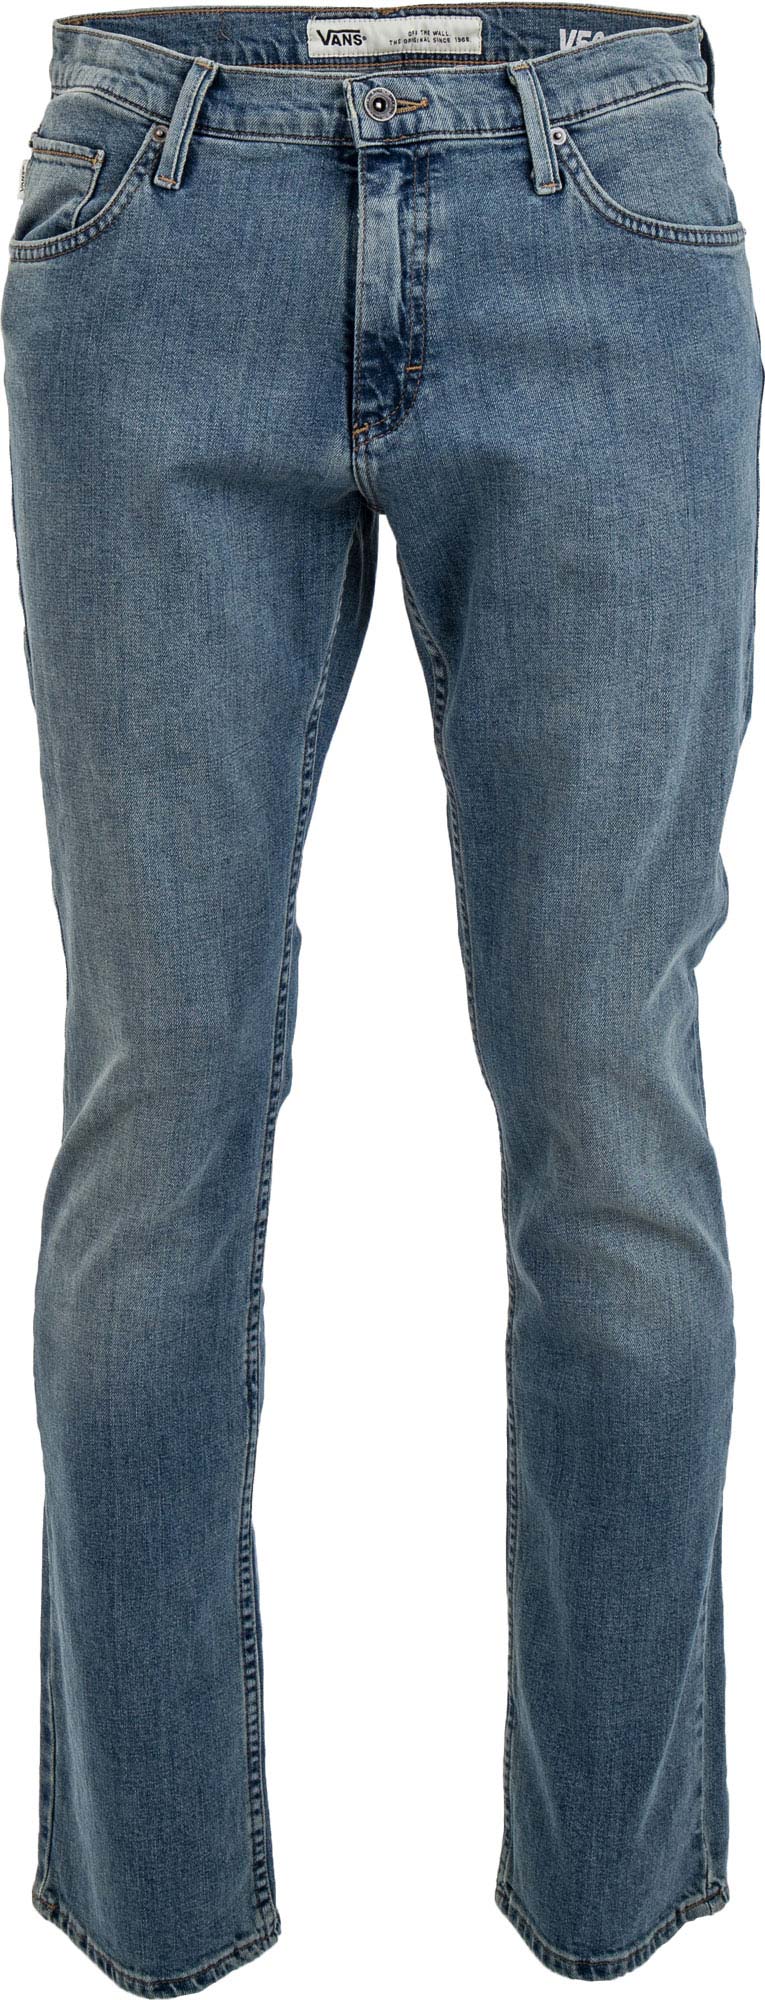 Pánské jeansy